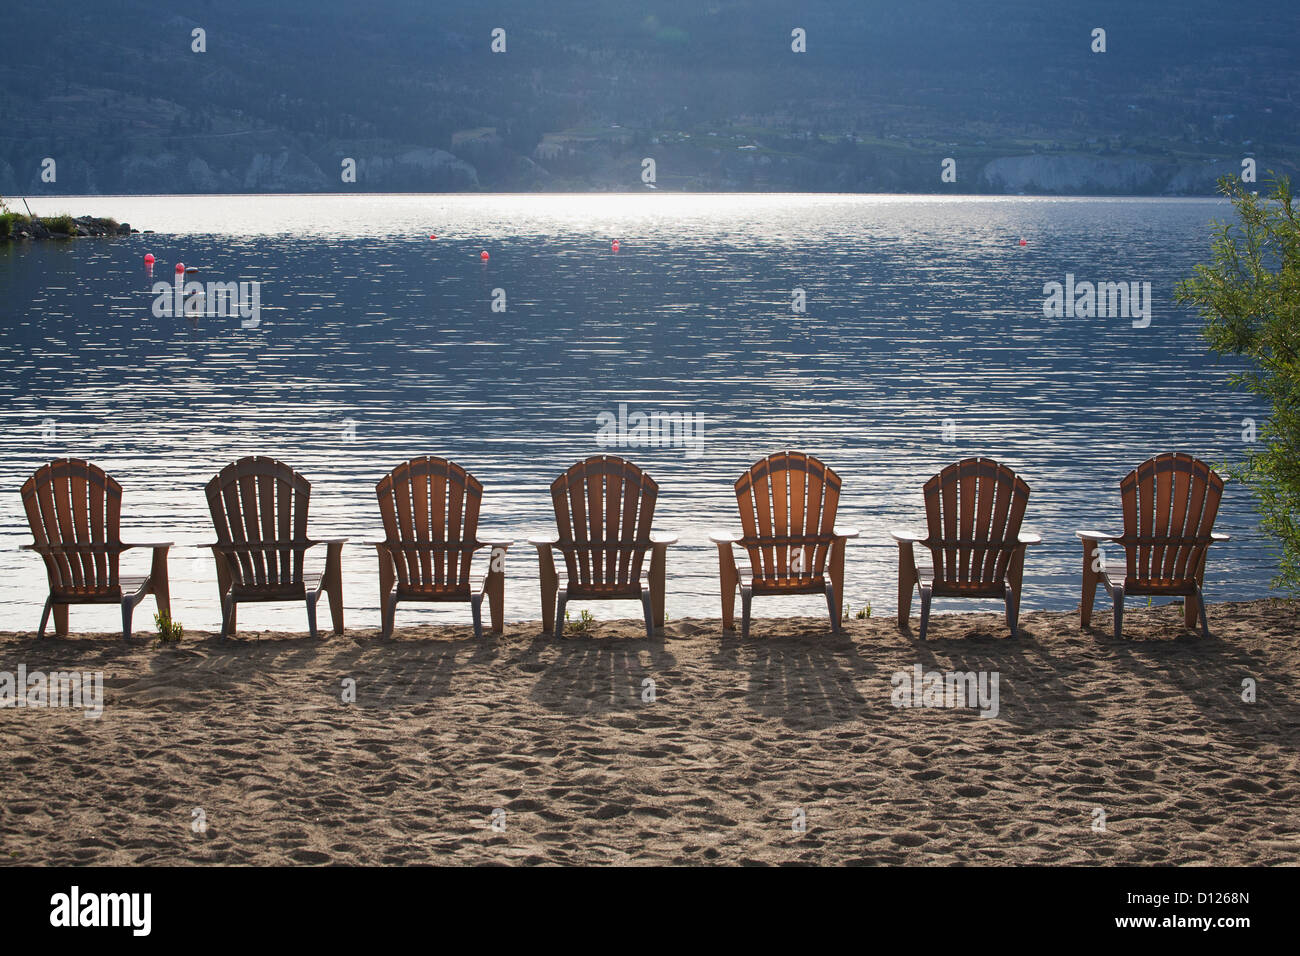 Aufgereiht an der Küste der Sonne reflektierenden See mit Schatten der Stühle auf dem Sand liegen; British Columbia Kanada Stockfoto